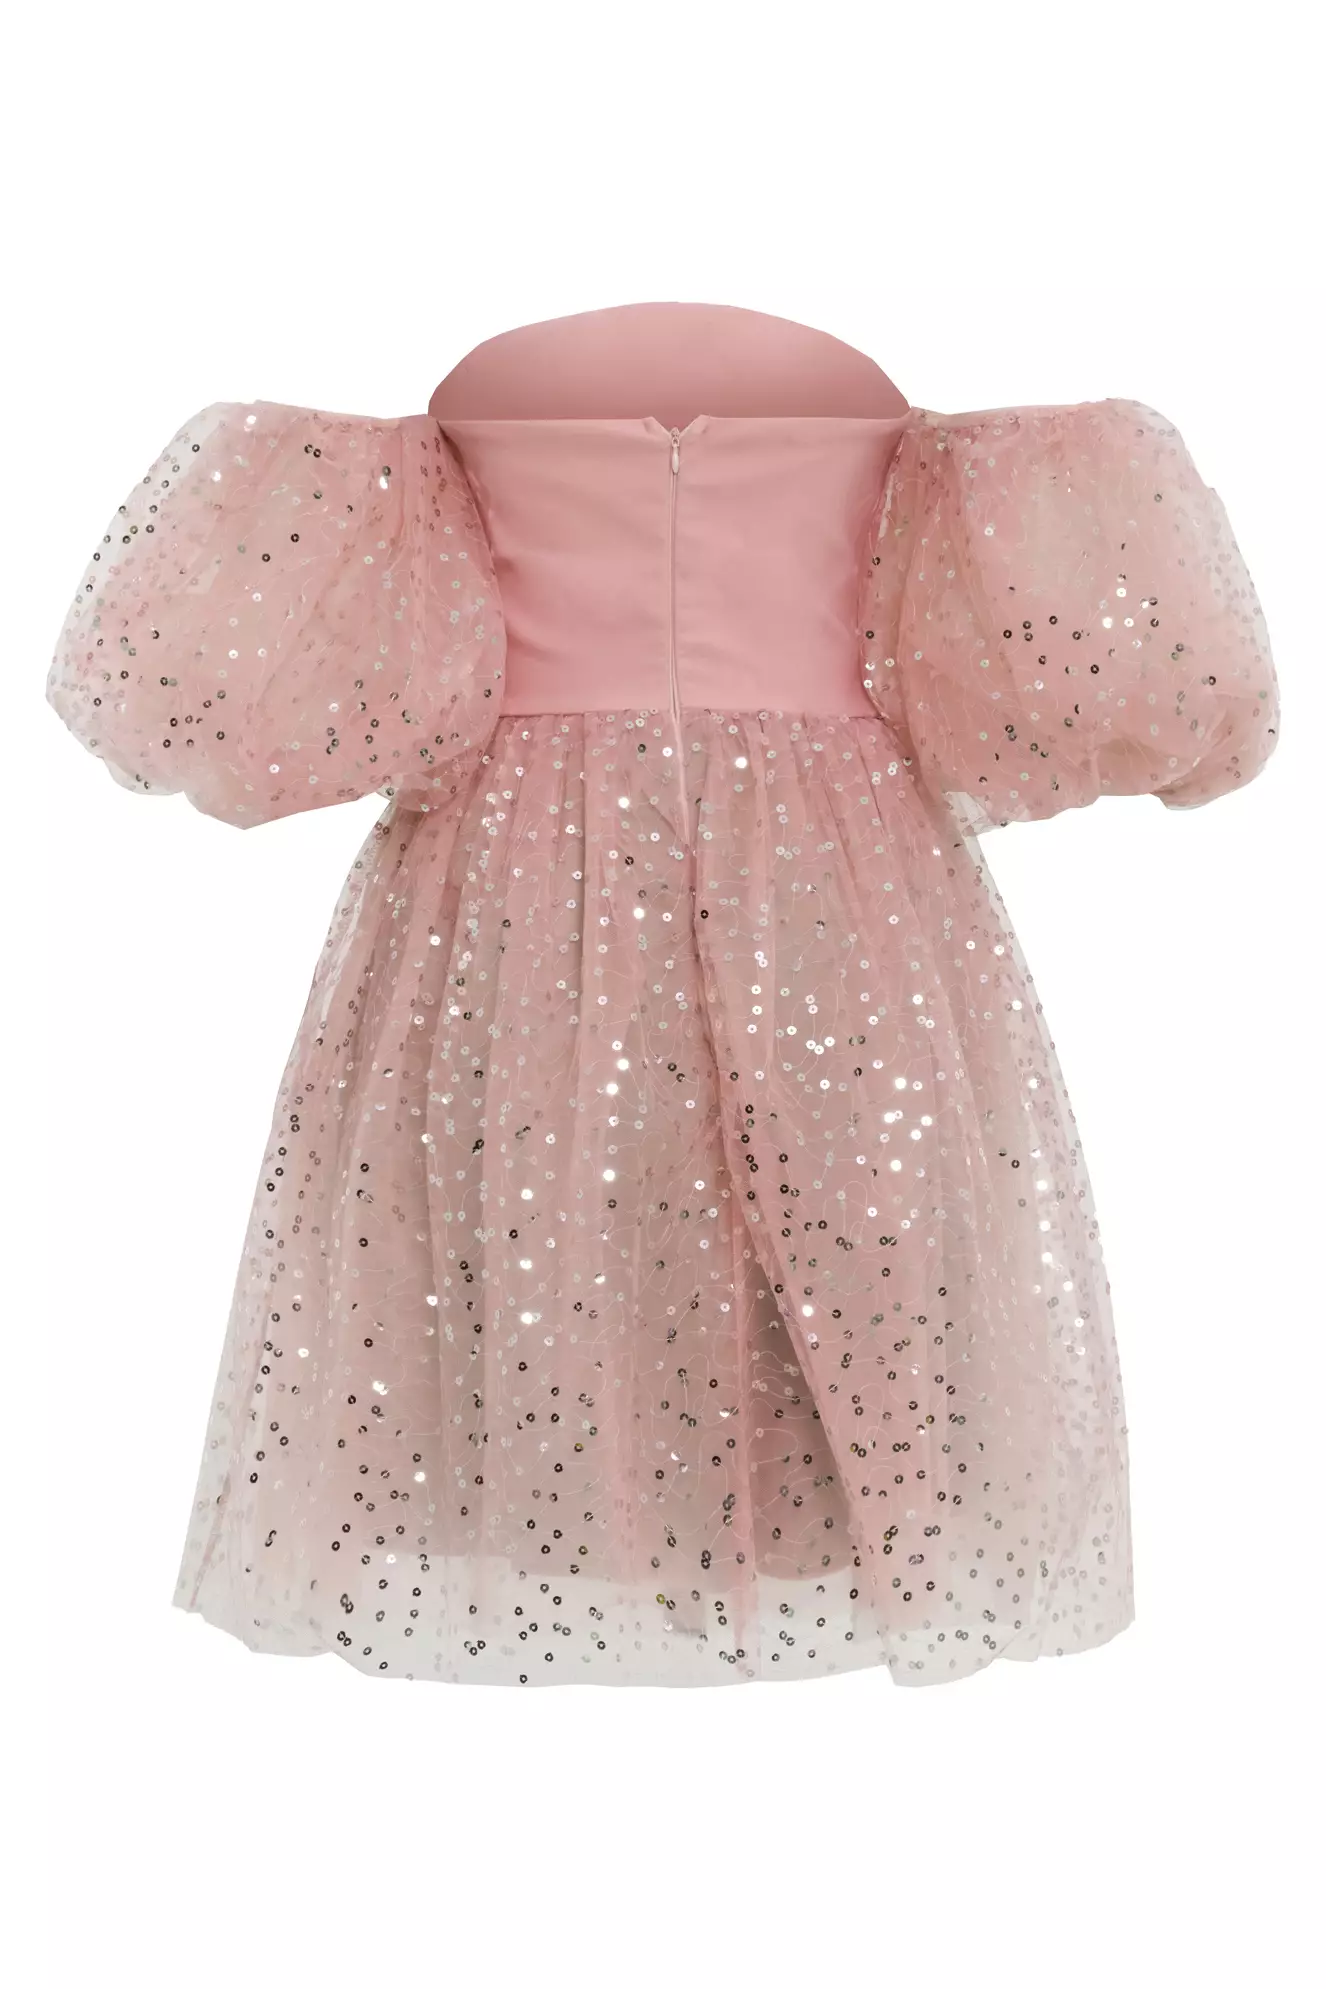 Blush pul payetli krep short sleeve mini dress